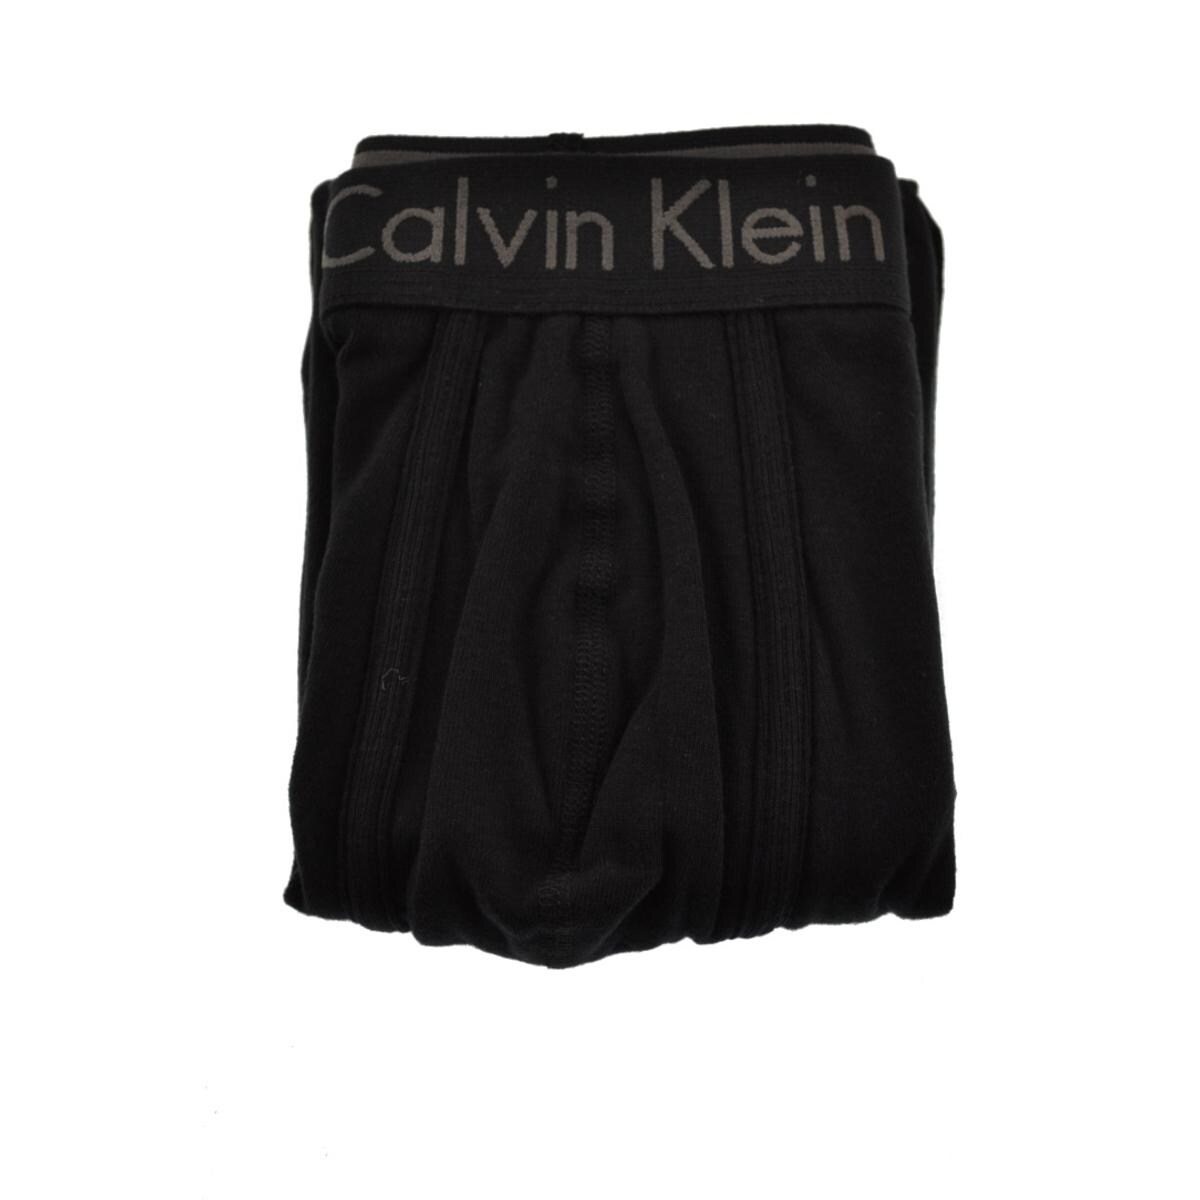 calvin klein body fit pants